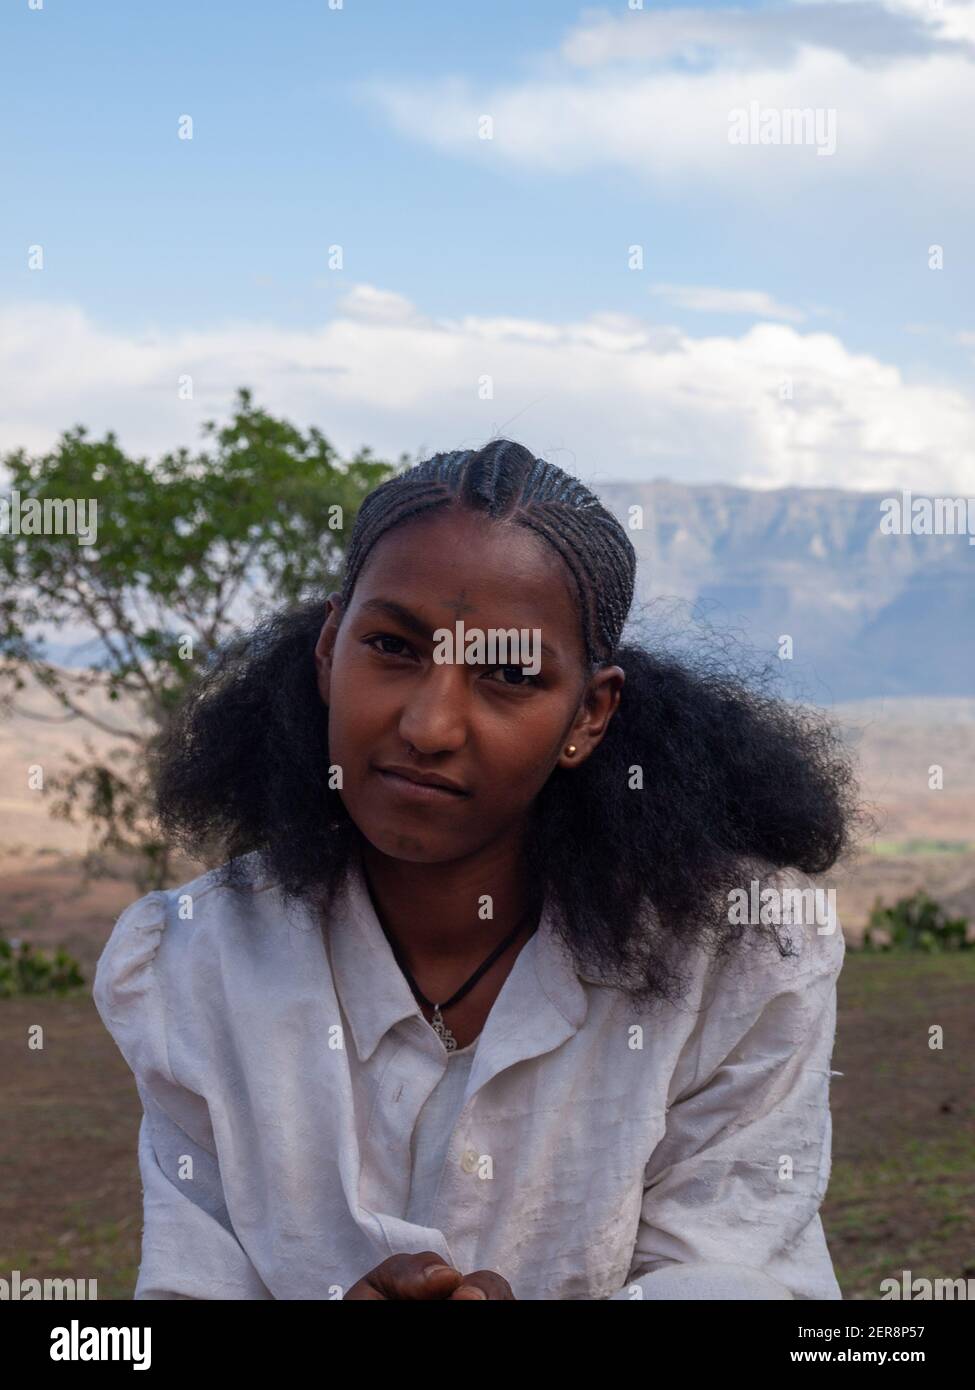 Pin on ETHIOPIA